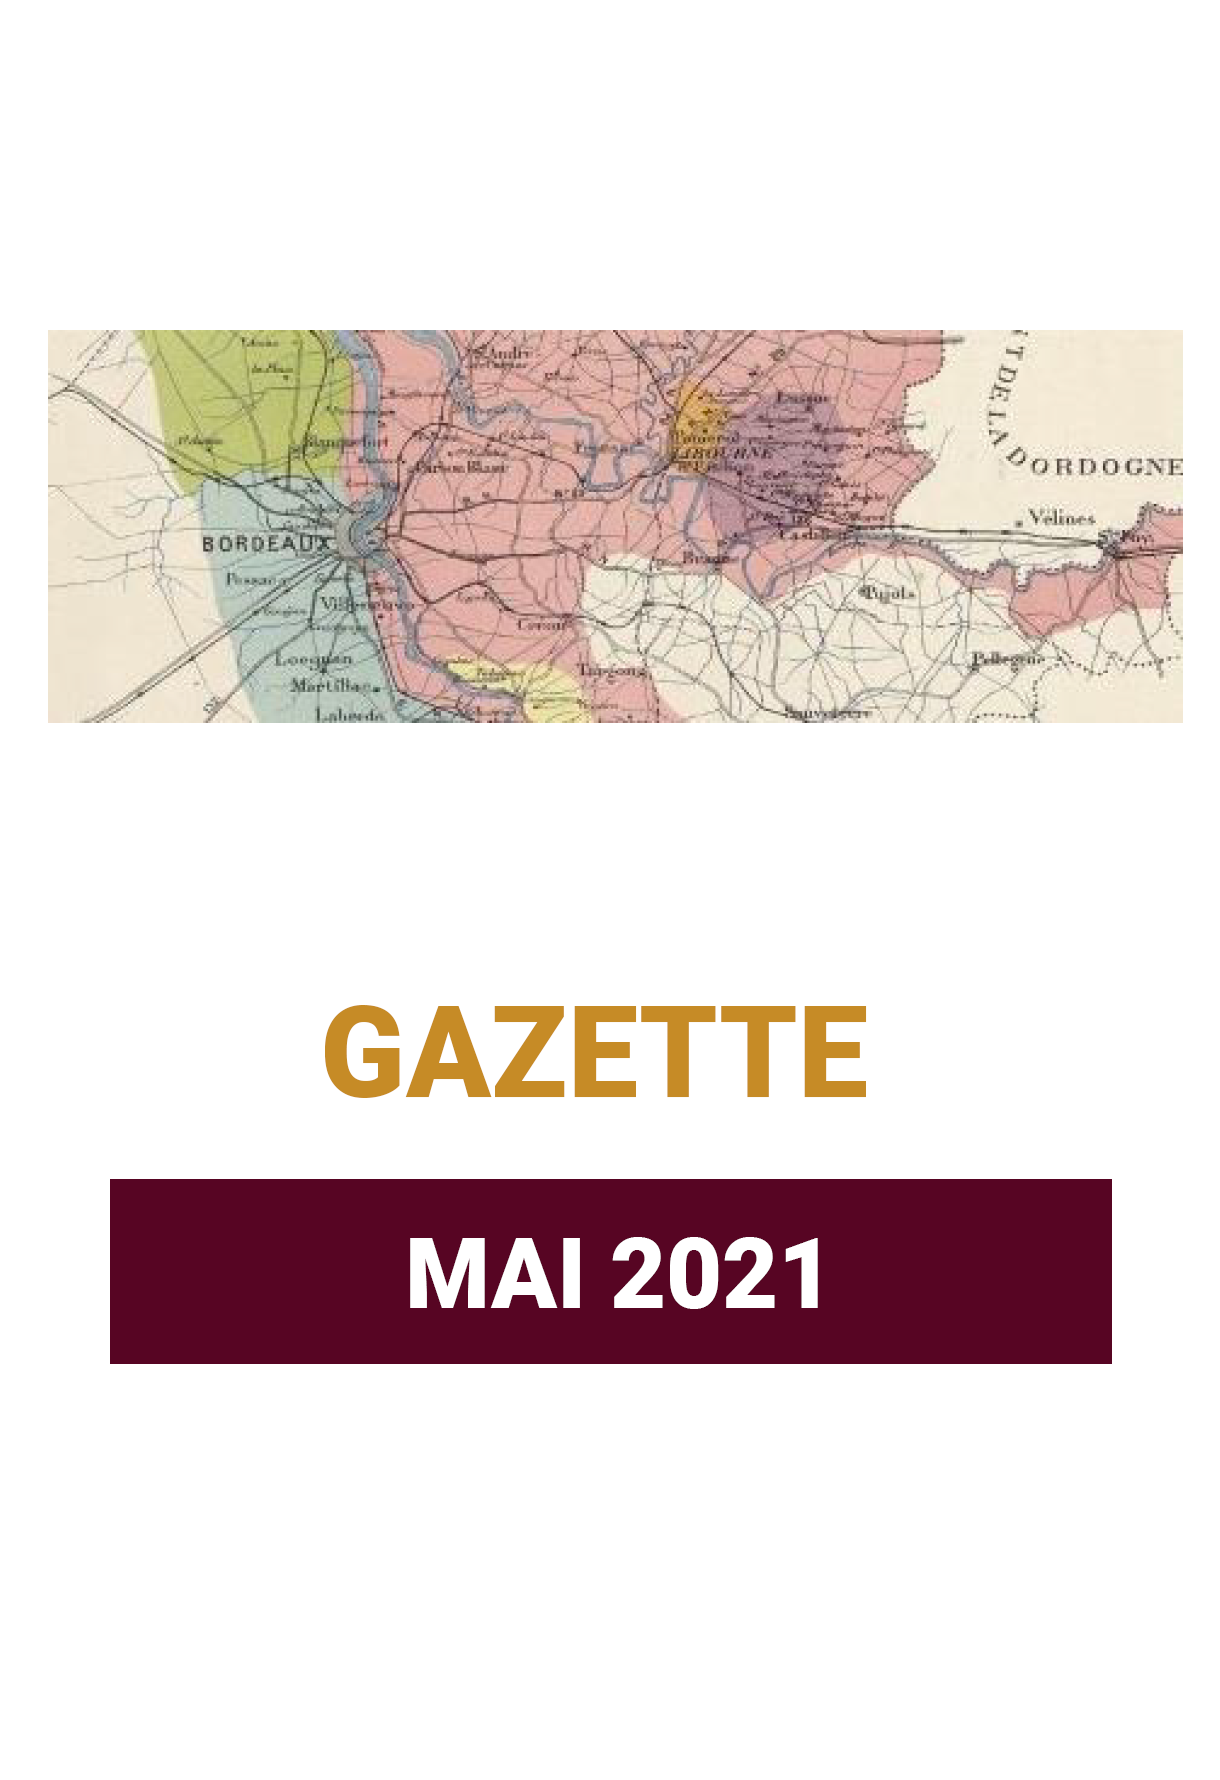 Gazette MAI 2021